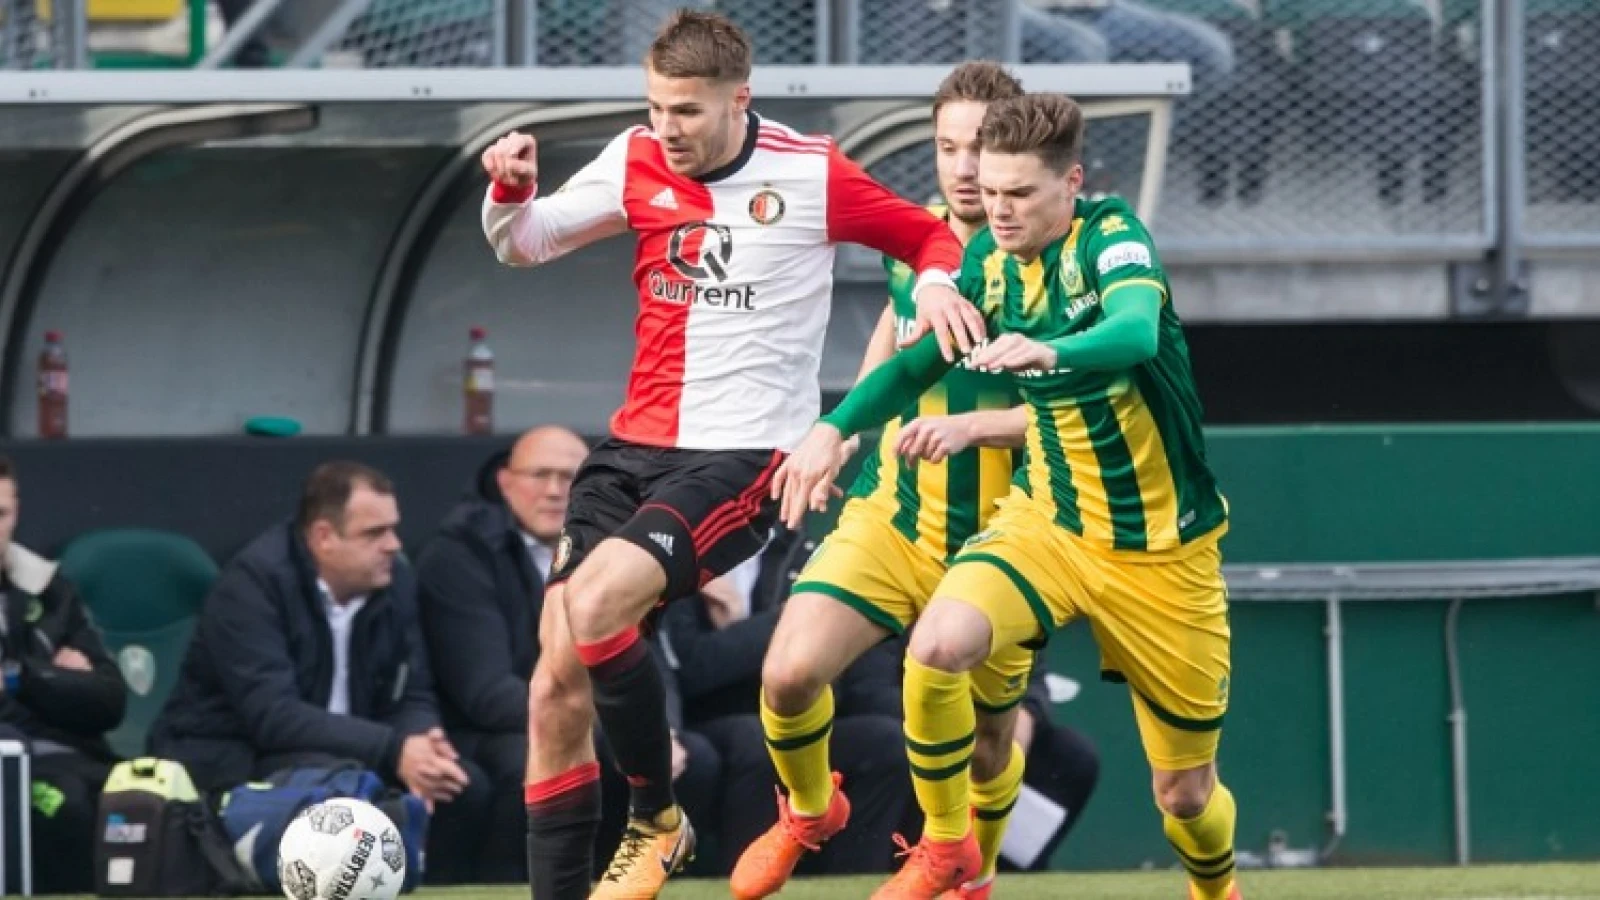 LIVE | ADO Den Haag - Feyenoord 2-2 | Einde wedstrijd